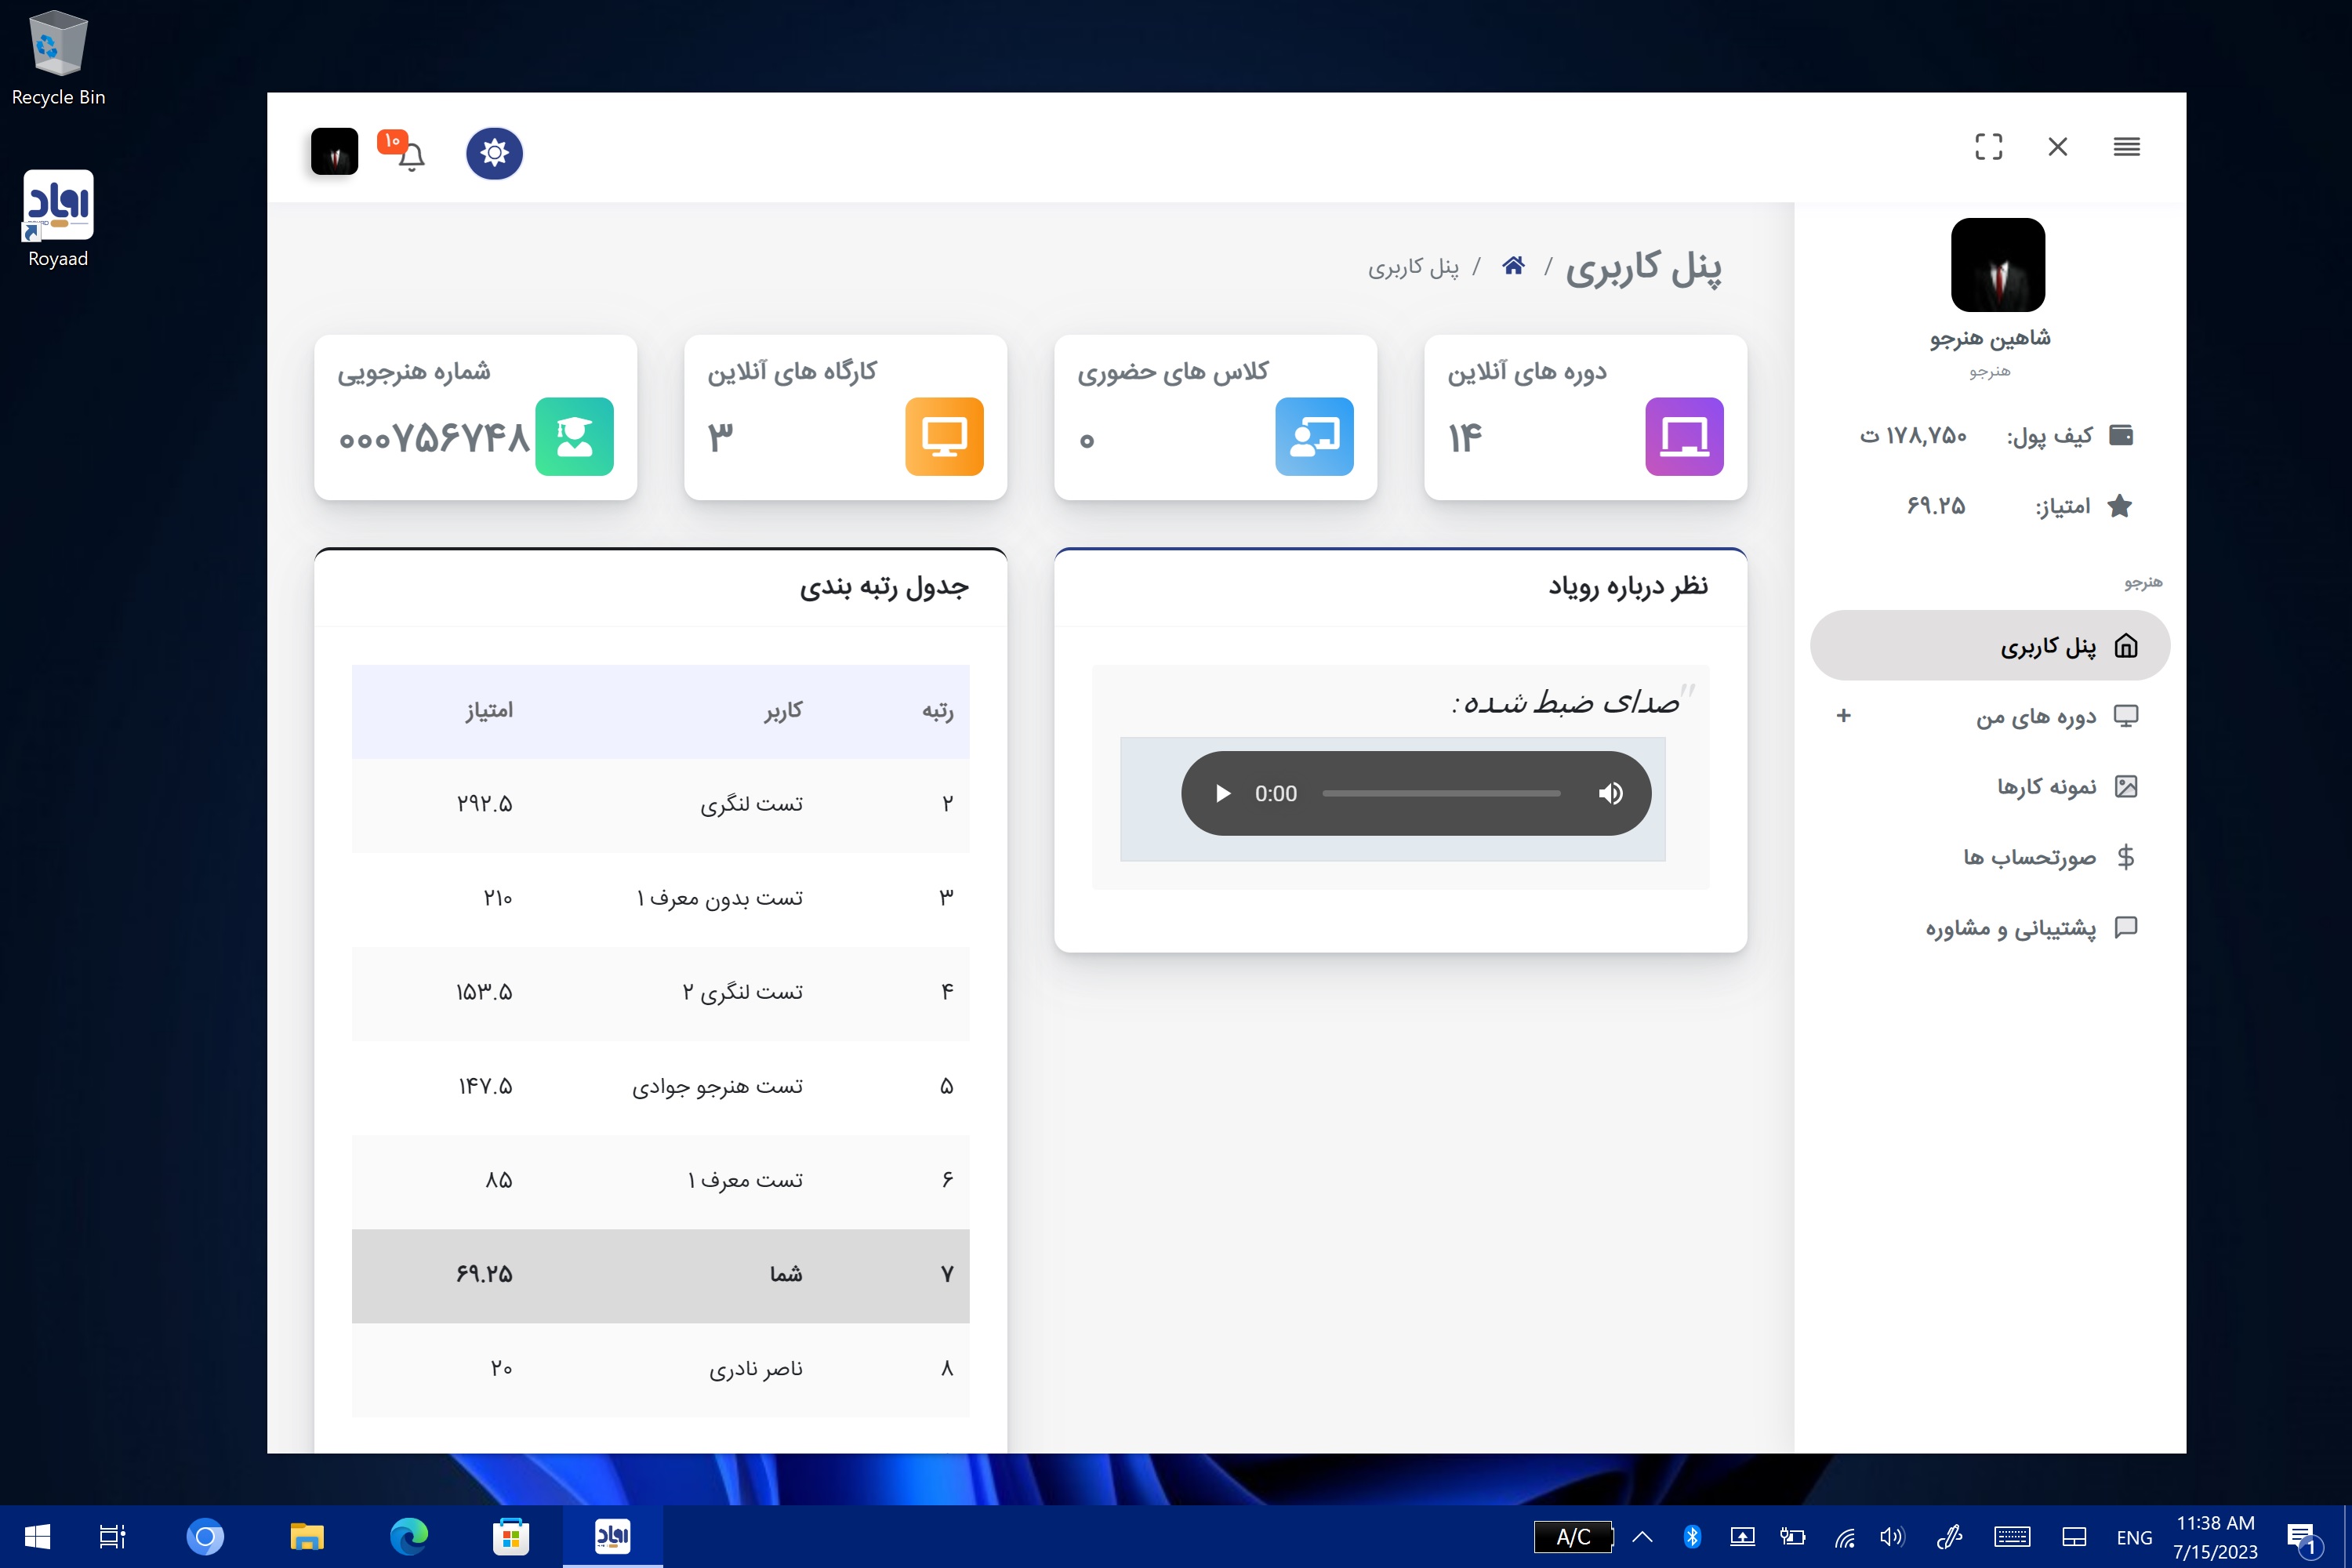 Shahinsoft.ir Royaad desktop application Dashboard